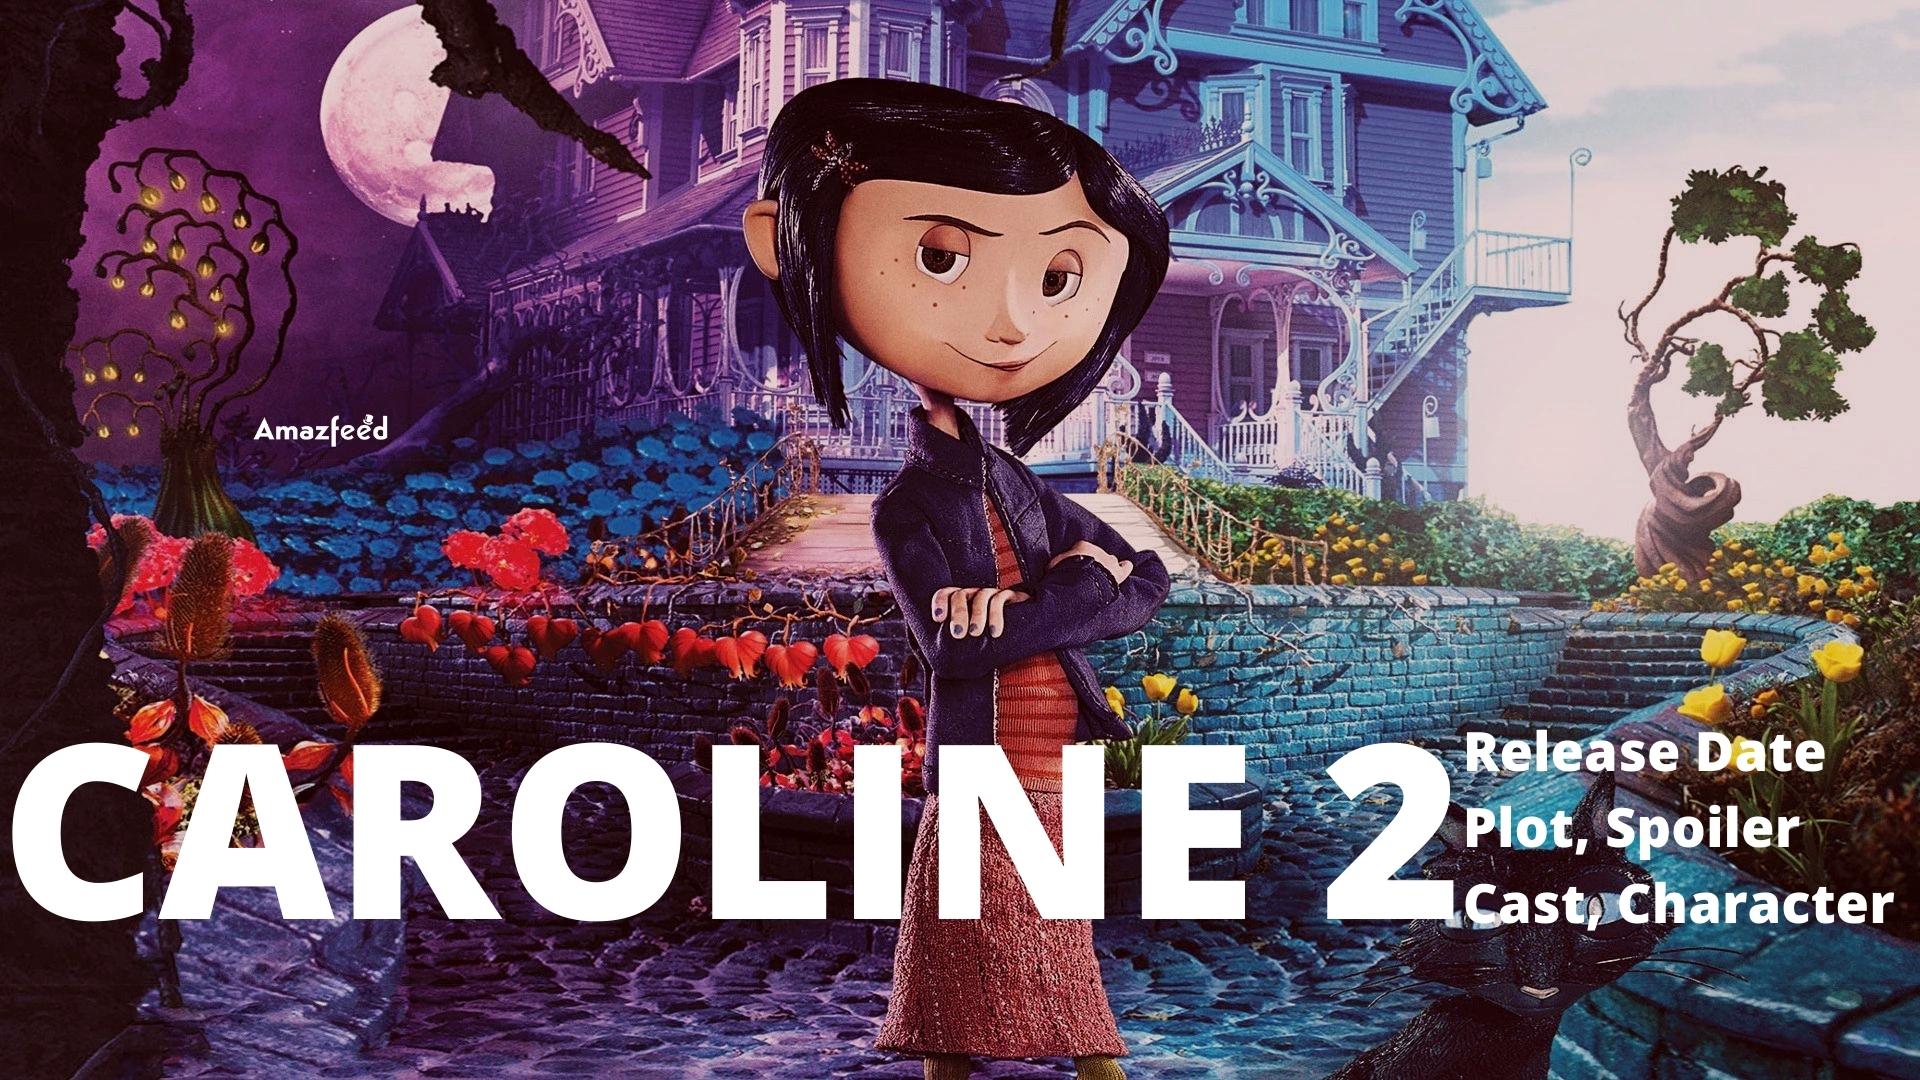 Coraline 2 Release Date, Plot, Spoiler, Cast, Character